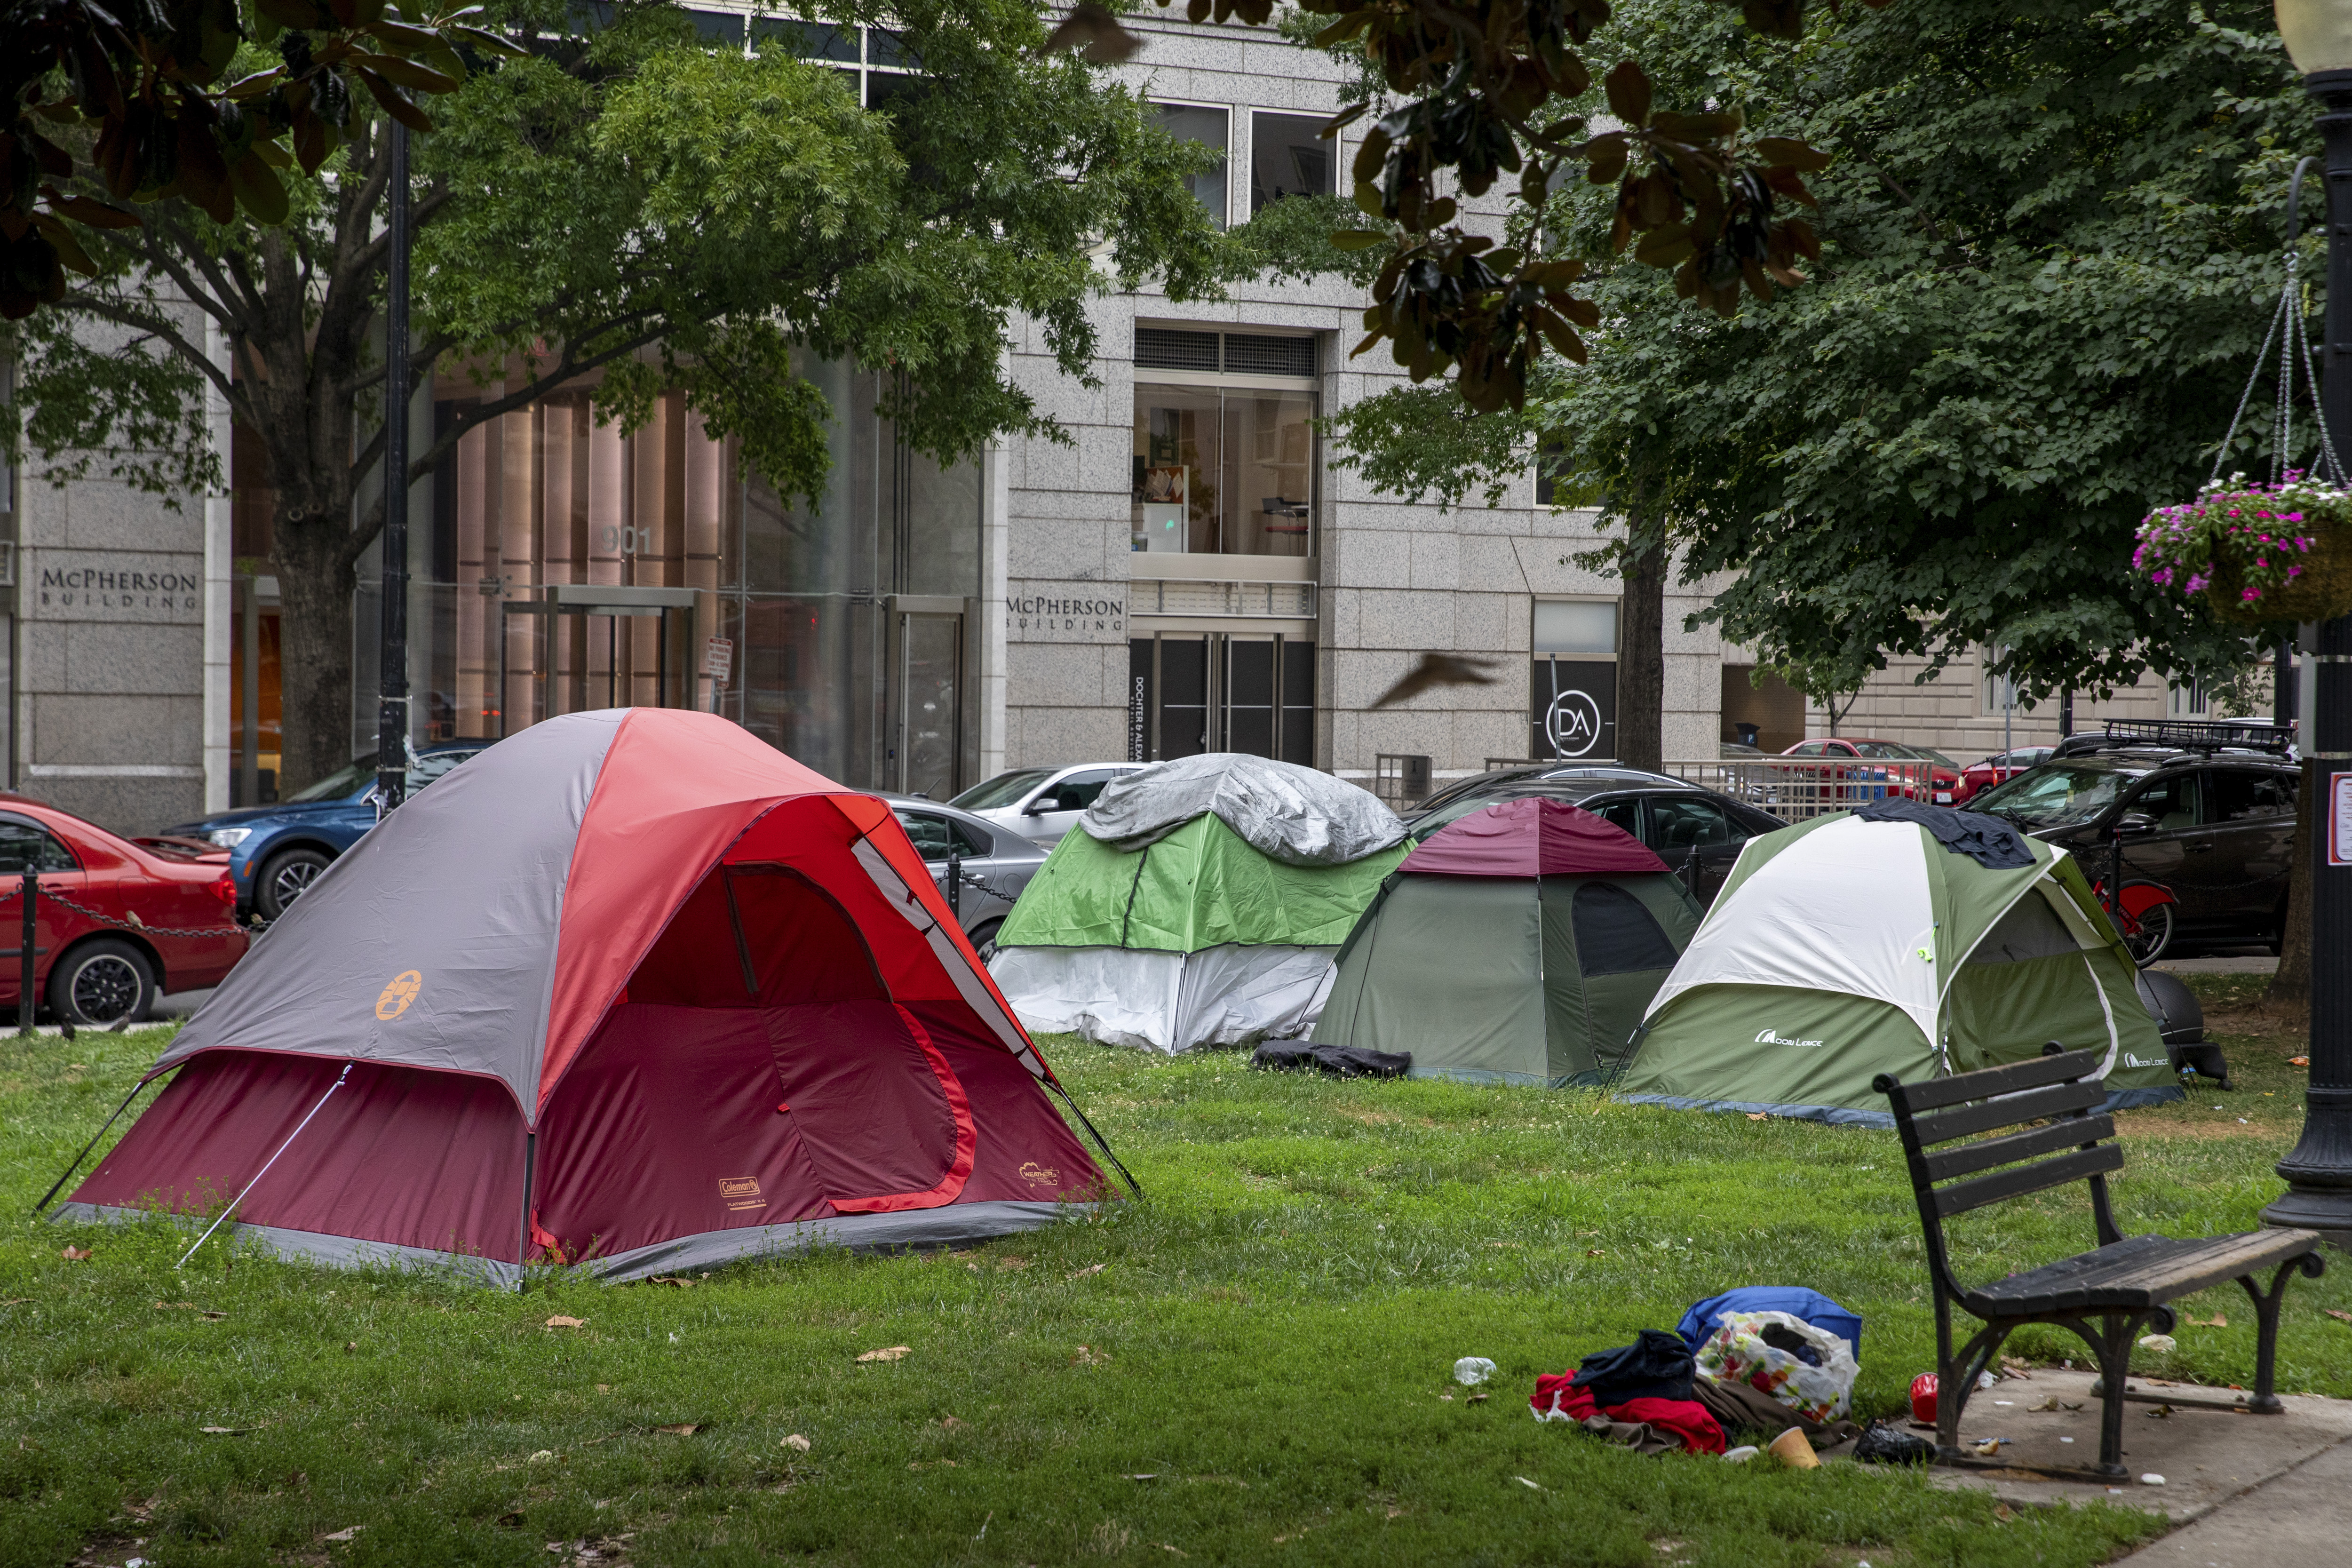 Tiendas de campaña de personas sin alojamiento en McPherson Square en Washington, el 31 de julio de 2022. (Foto Prensa Libre: Amanda Andrade-Rhoades/The New York Times)